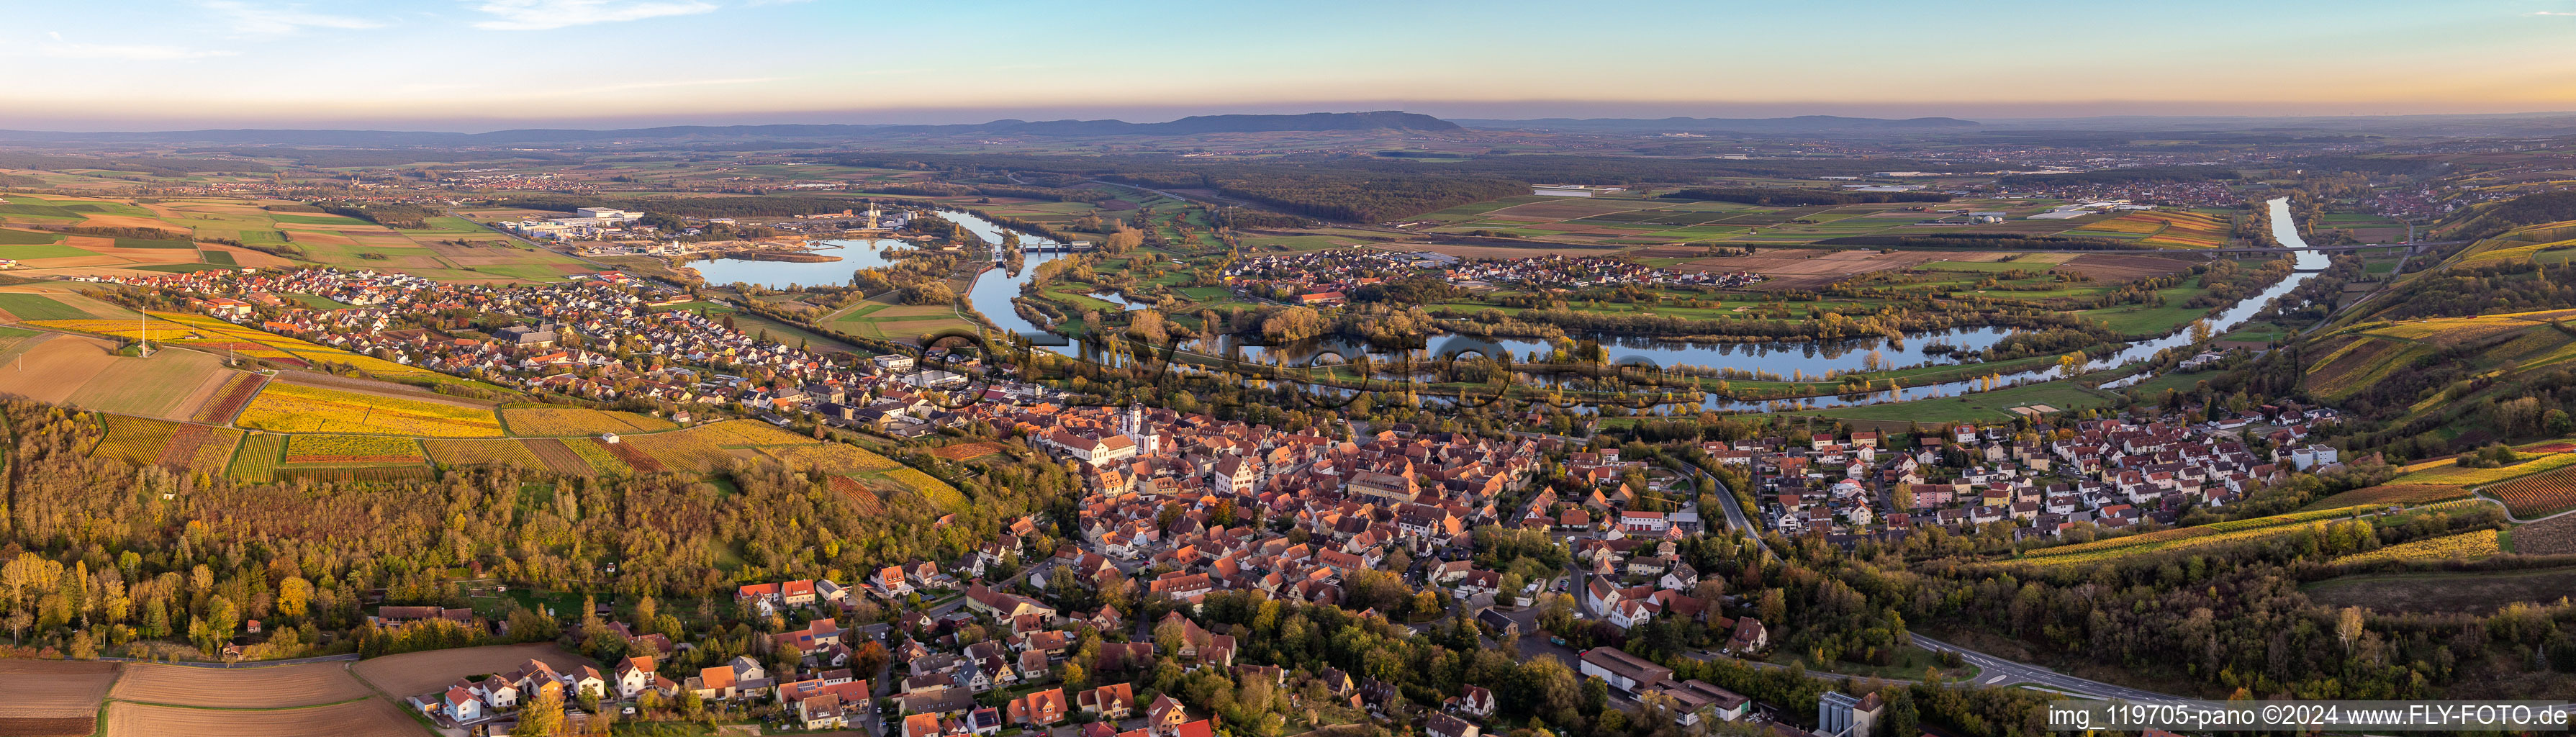 Panorama - Perspektive des Ortskern am Uferbereich des des Main - Flußverlaufes in Dettelbach im Bundesland Bayern, Deutschland